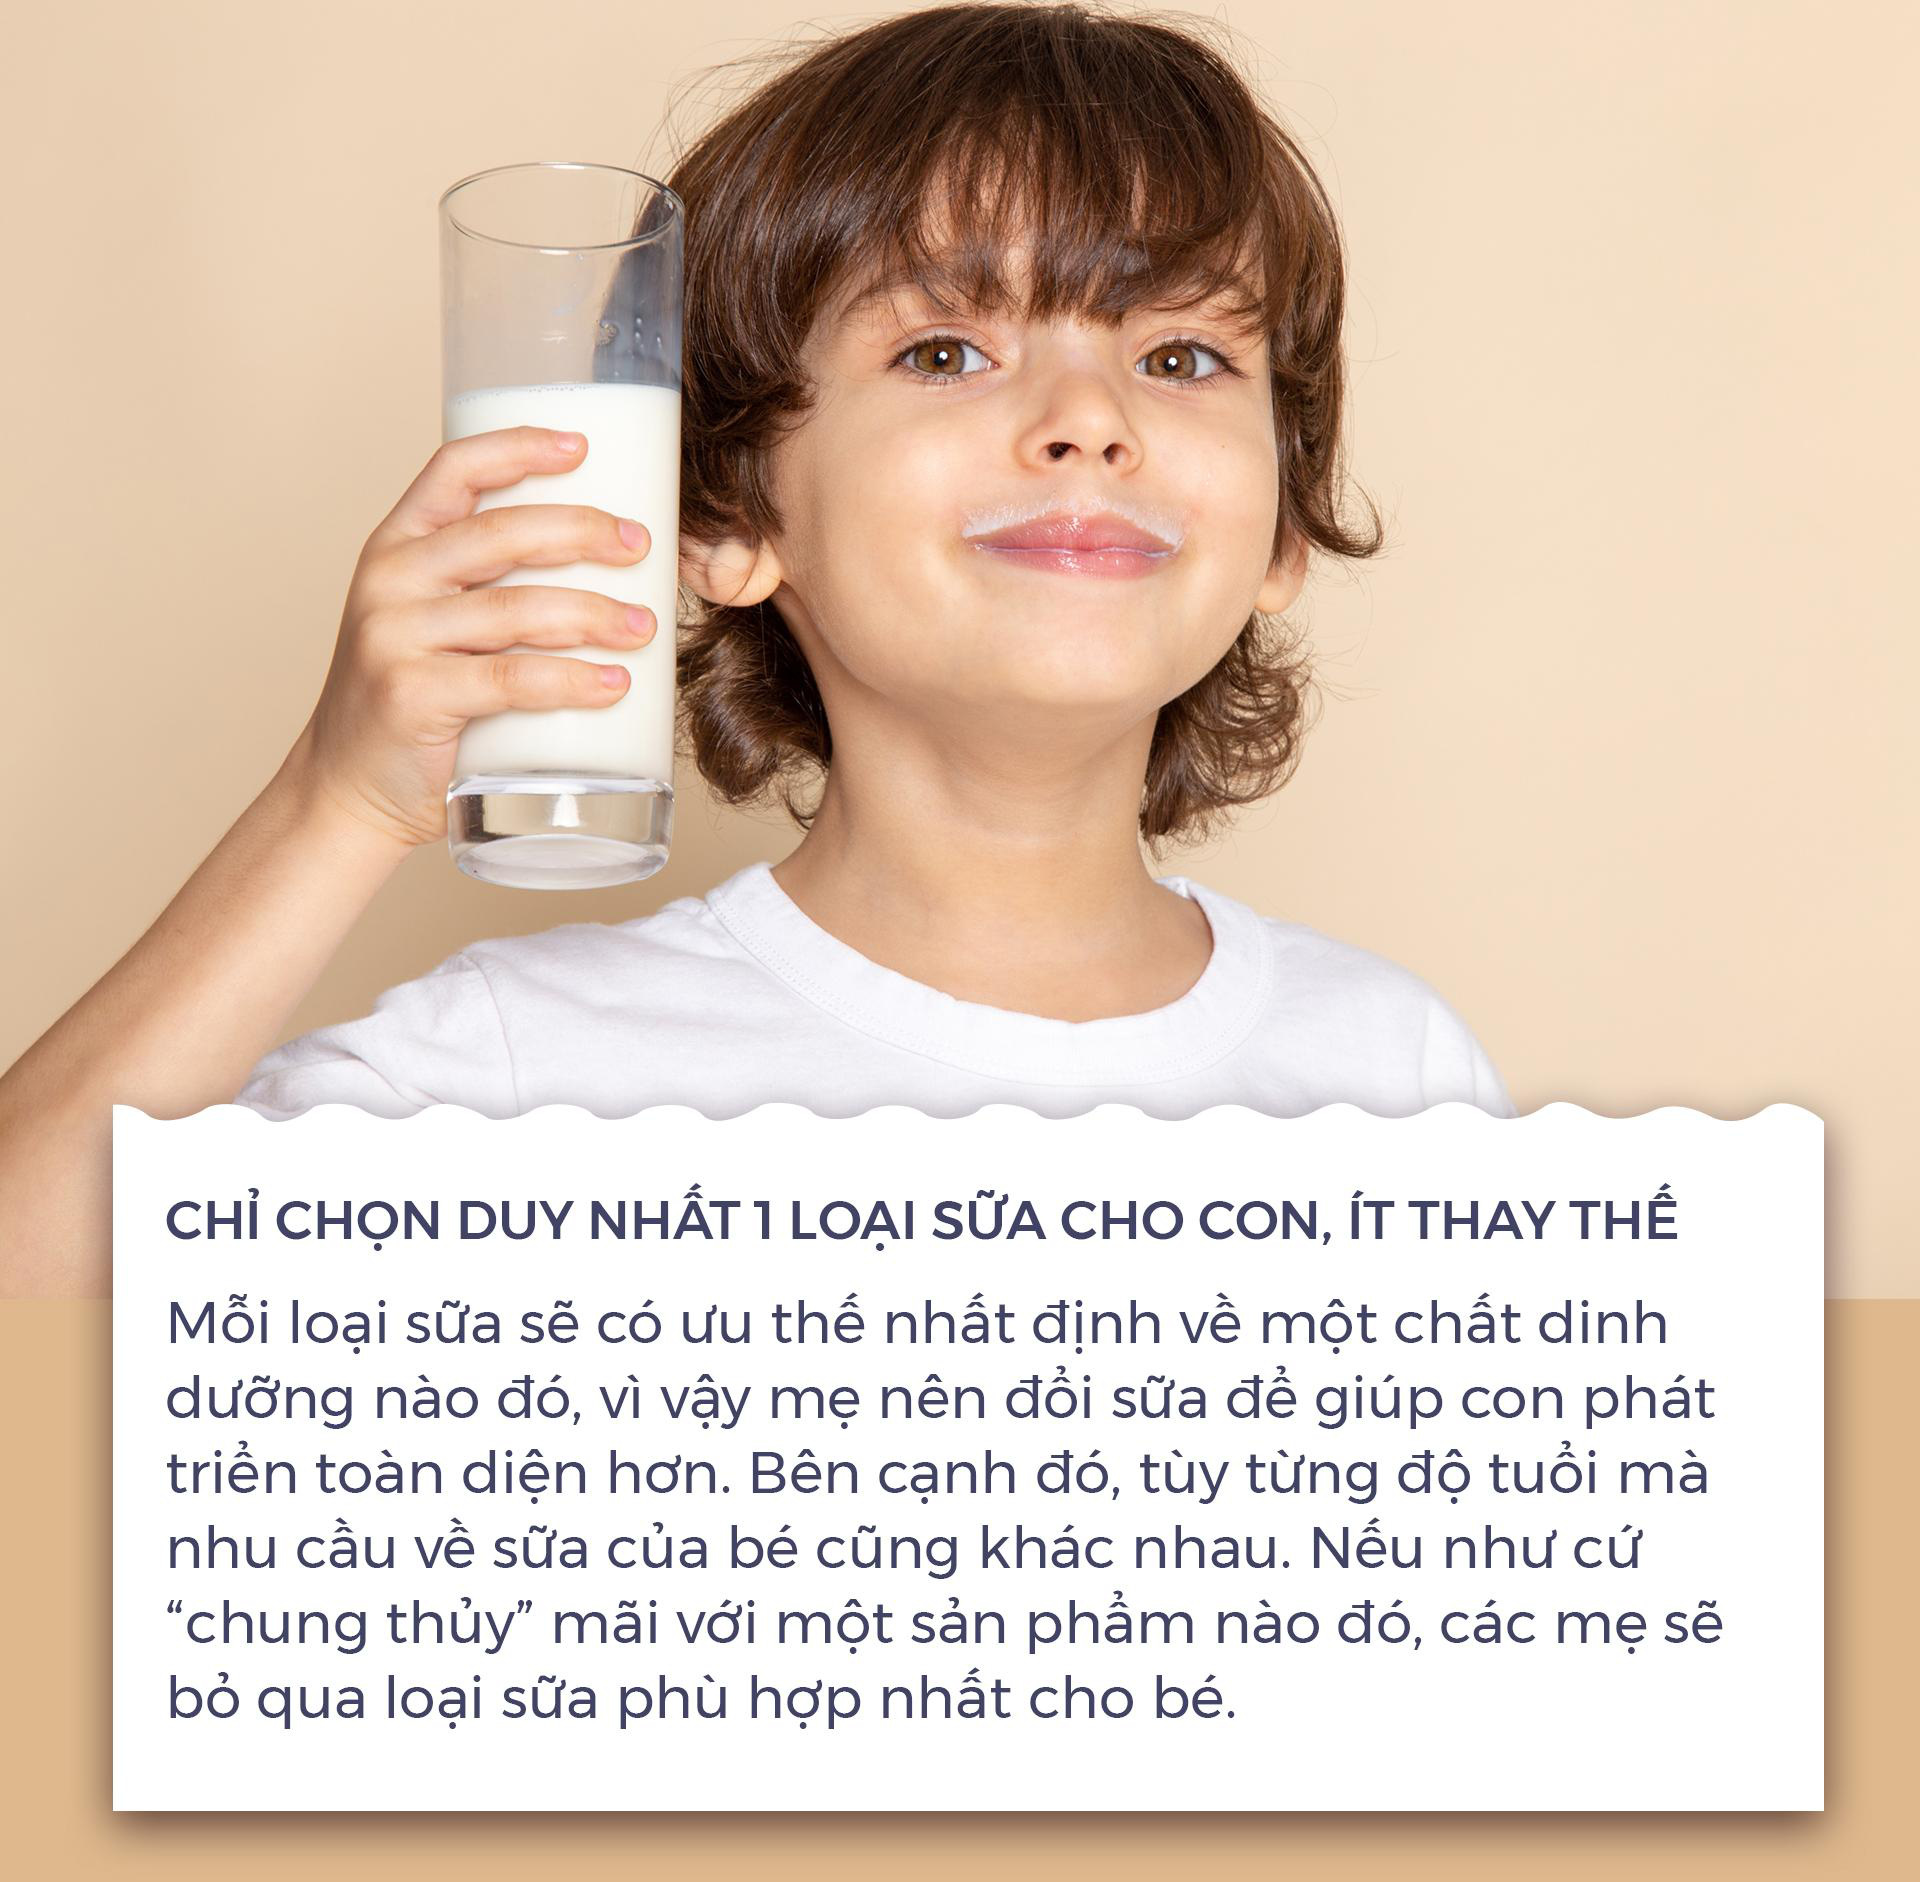 5 sai lầm của mẹ Việt khi chọn sữa cho con khiến trẻ còi cọc, táo bón - Ảnh 1.